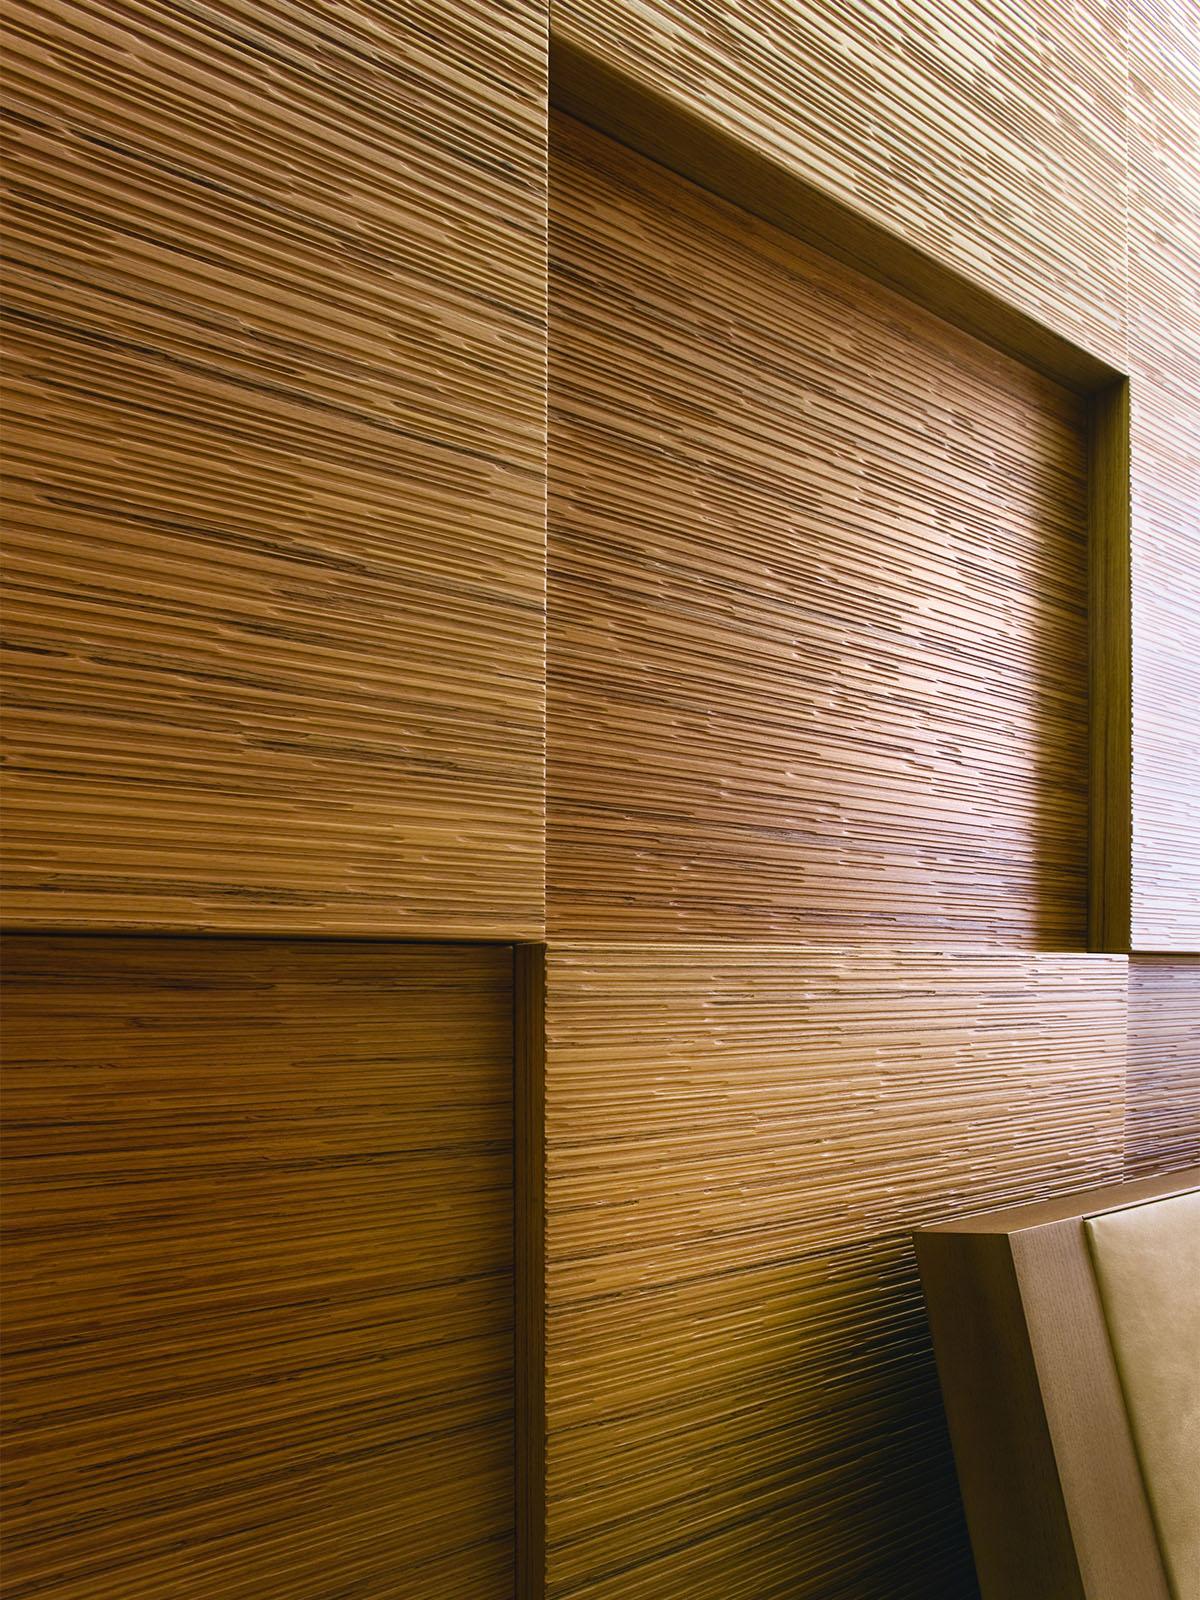 Купить панели для отделки комнаты. Шпонированные панели Topperfo Micro Ulme Stone Edition Acoustic Wood Panel. Панели Decor Acoustic. Wall cladding панель стеновая. 3в панели дерево Леруа.